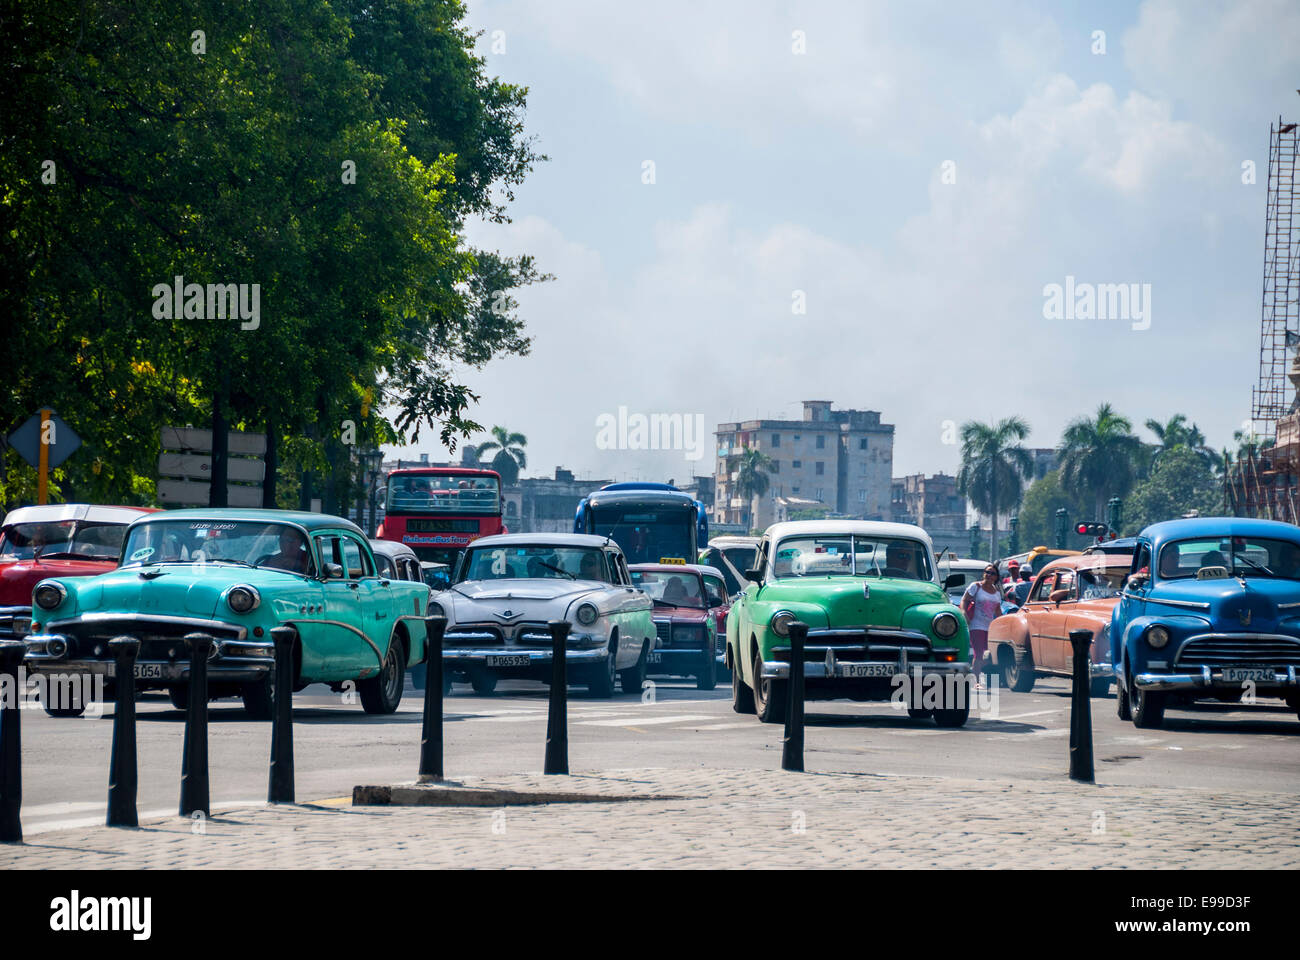 Alte amerikanische Oldtimer verwendet, da die Mehrheit des Datenverkehrs Parque Central auf dem belebten Prado in Havanna Kuba Taxis ausmachen. Stockfoto